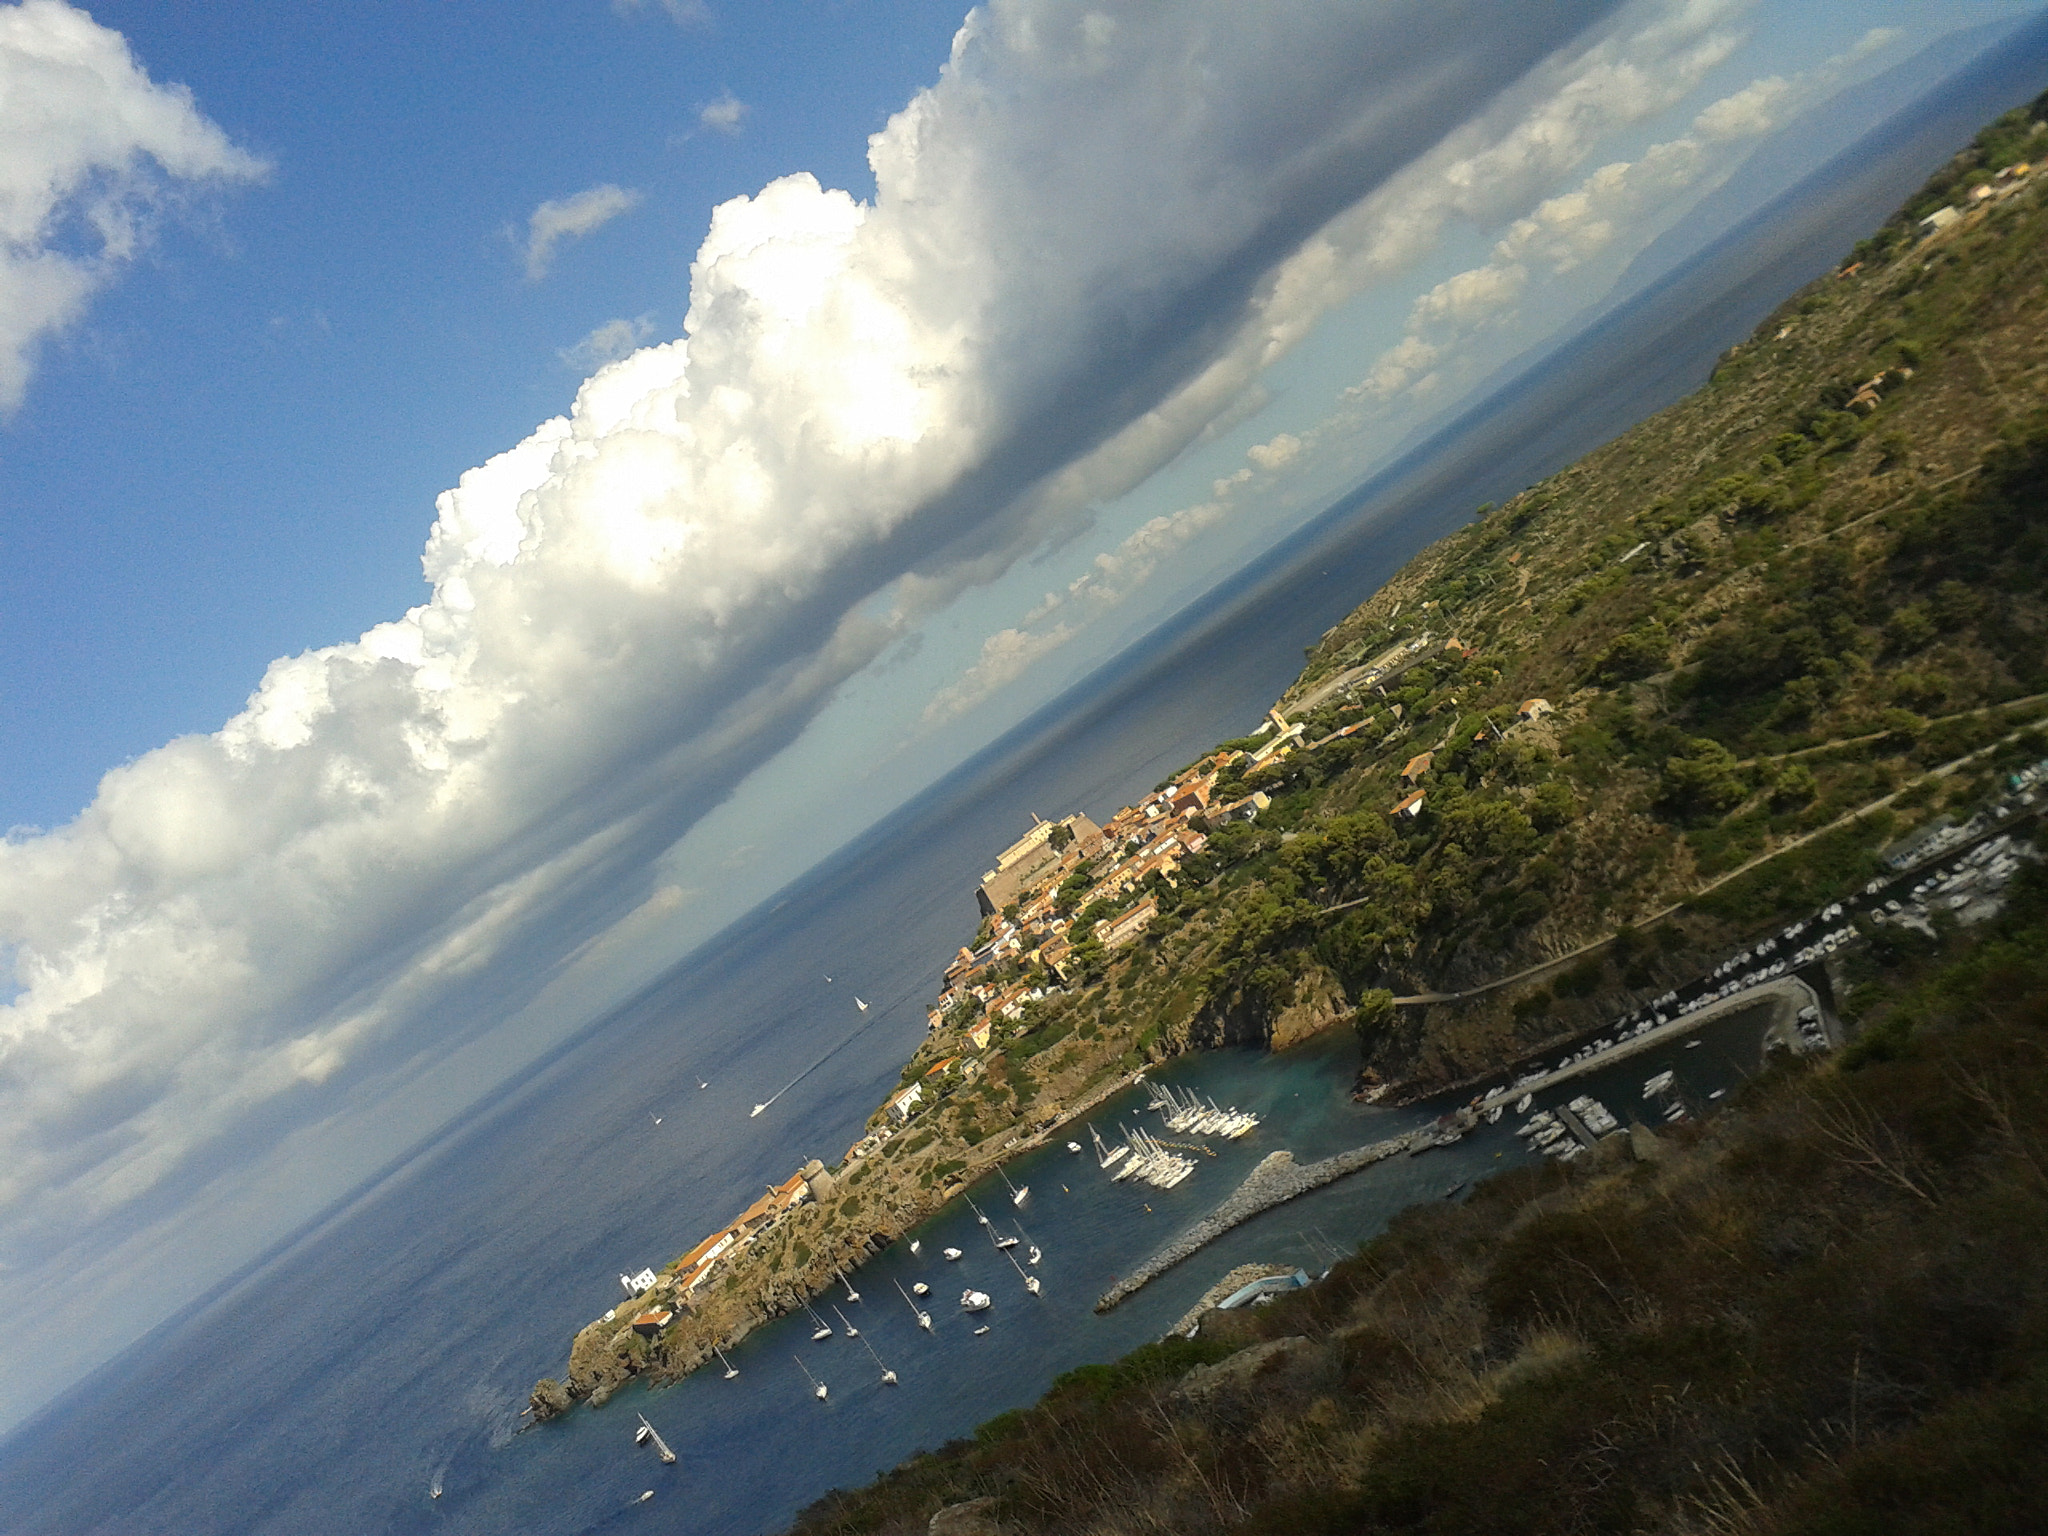 Samsung Galaxy S Advance sample photo. Capraia island, tuscany, italy photography